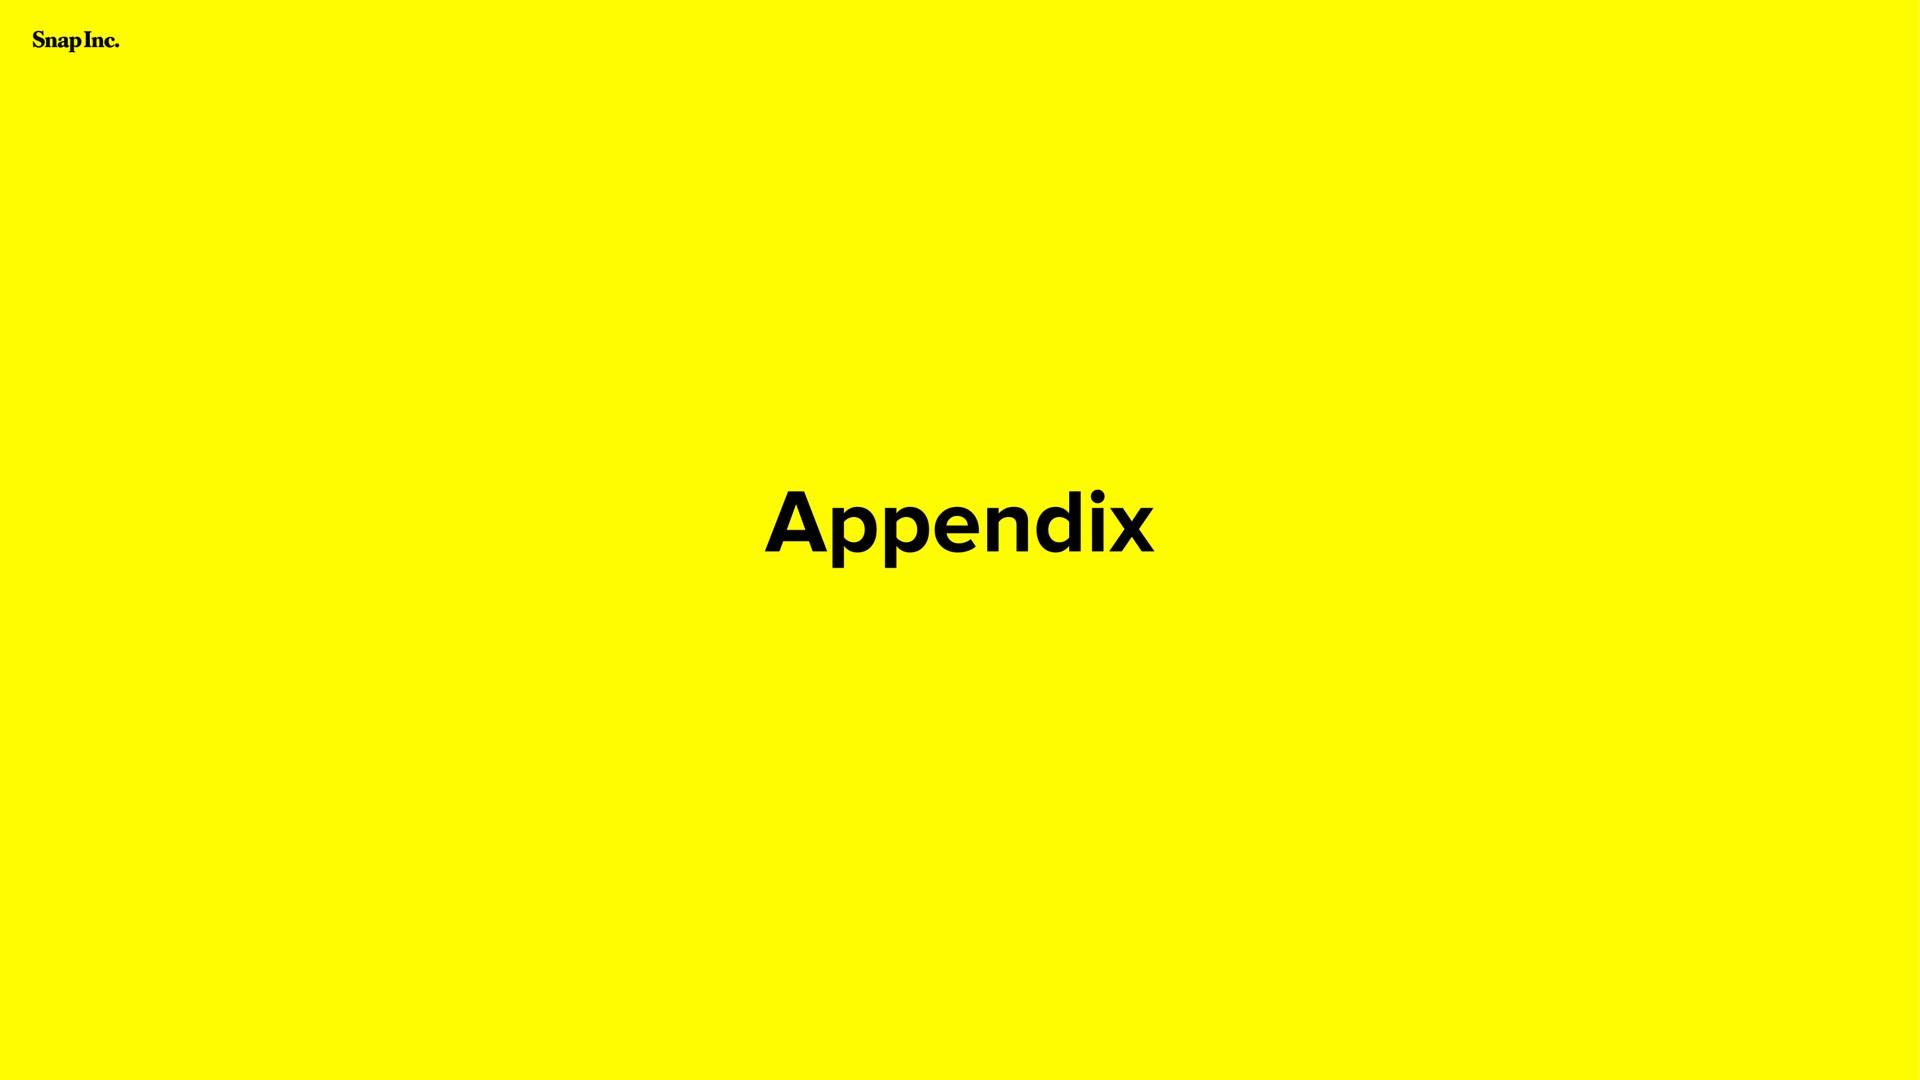 appendix | Snap Inc